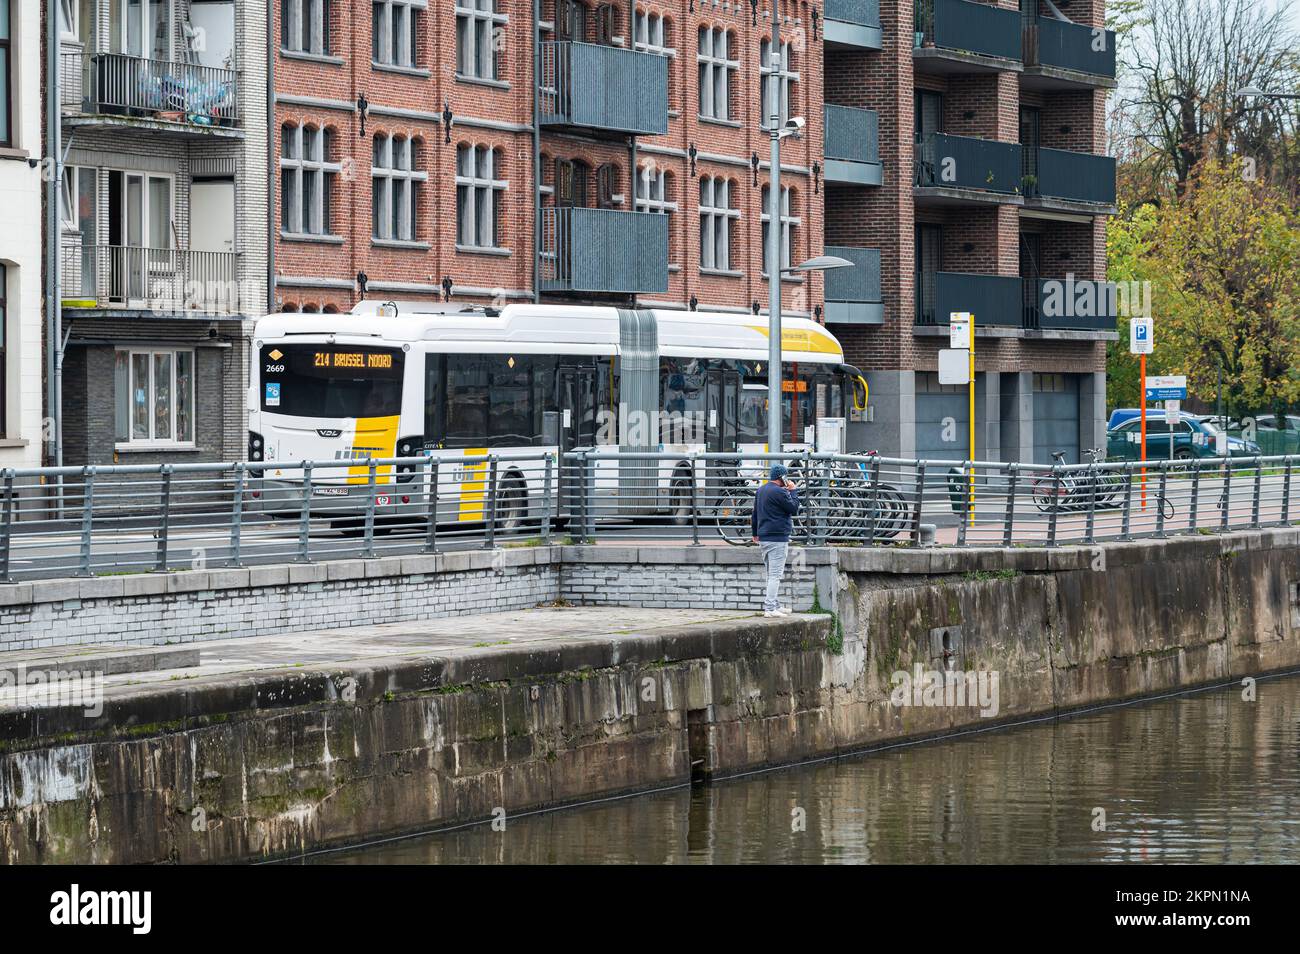 Aalst, Brabante Fiammingo, Belgio - 11 02 2022 - autobus bianco che guida sulle rive del fiume Dender Foto Stock